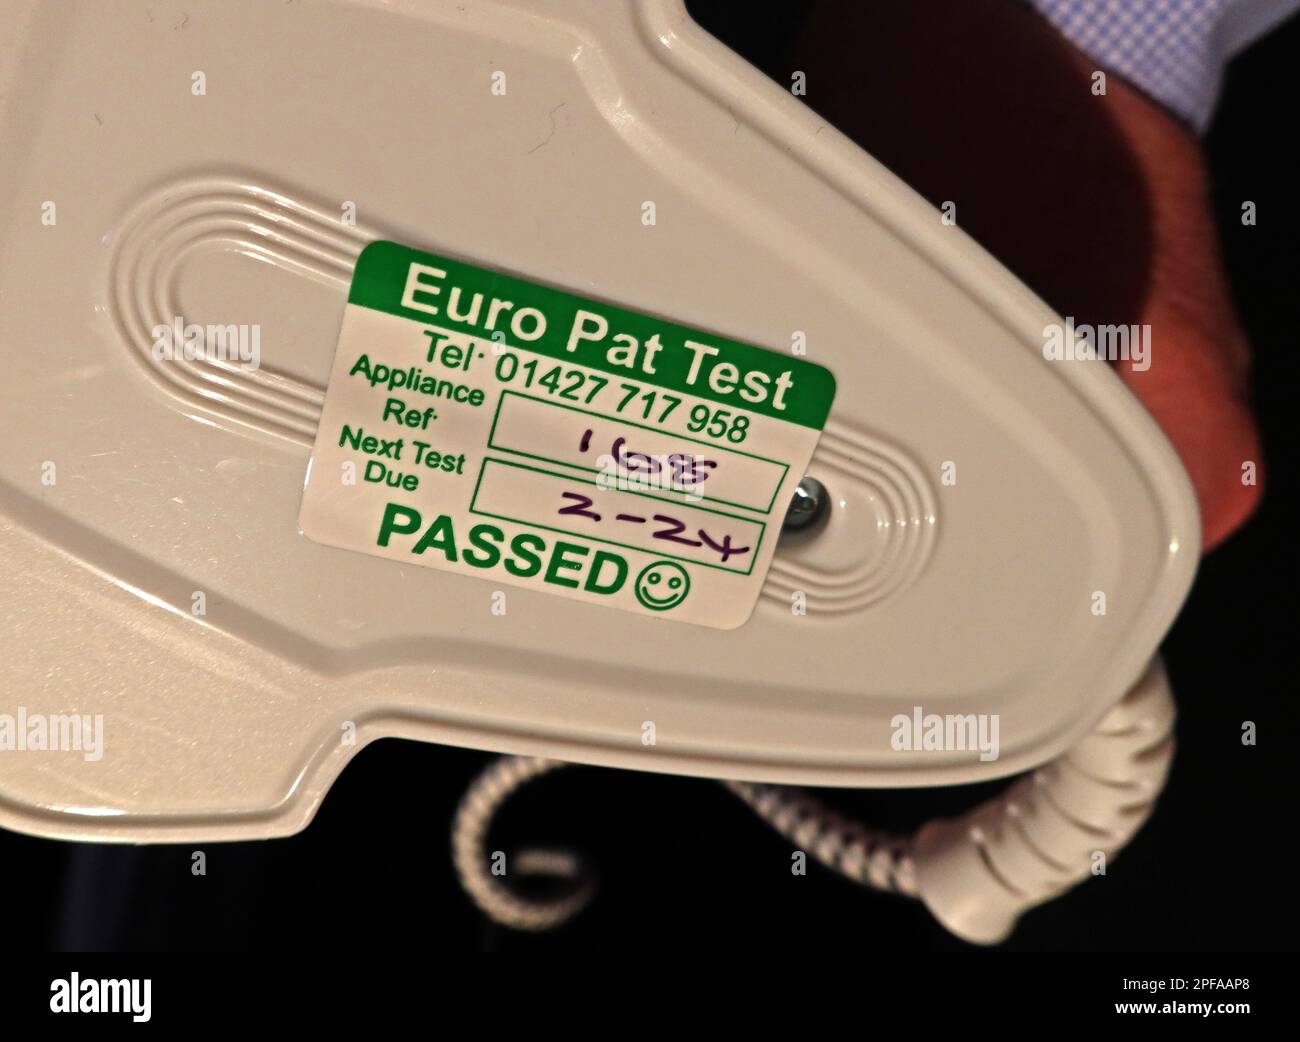 Etiquette de test PAT euro, Test de l'appareil portable - réussi , Réf. De l'appareil et prochain test attendu - réussi étiquette verte Banque D'Images